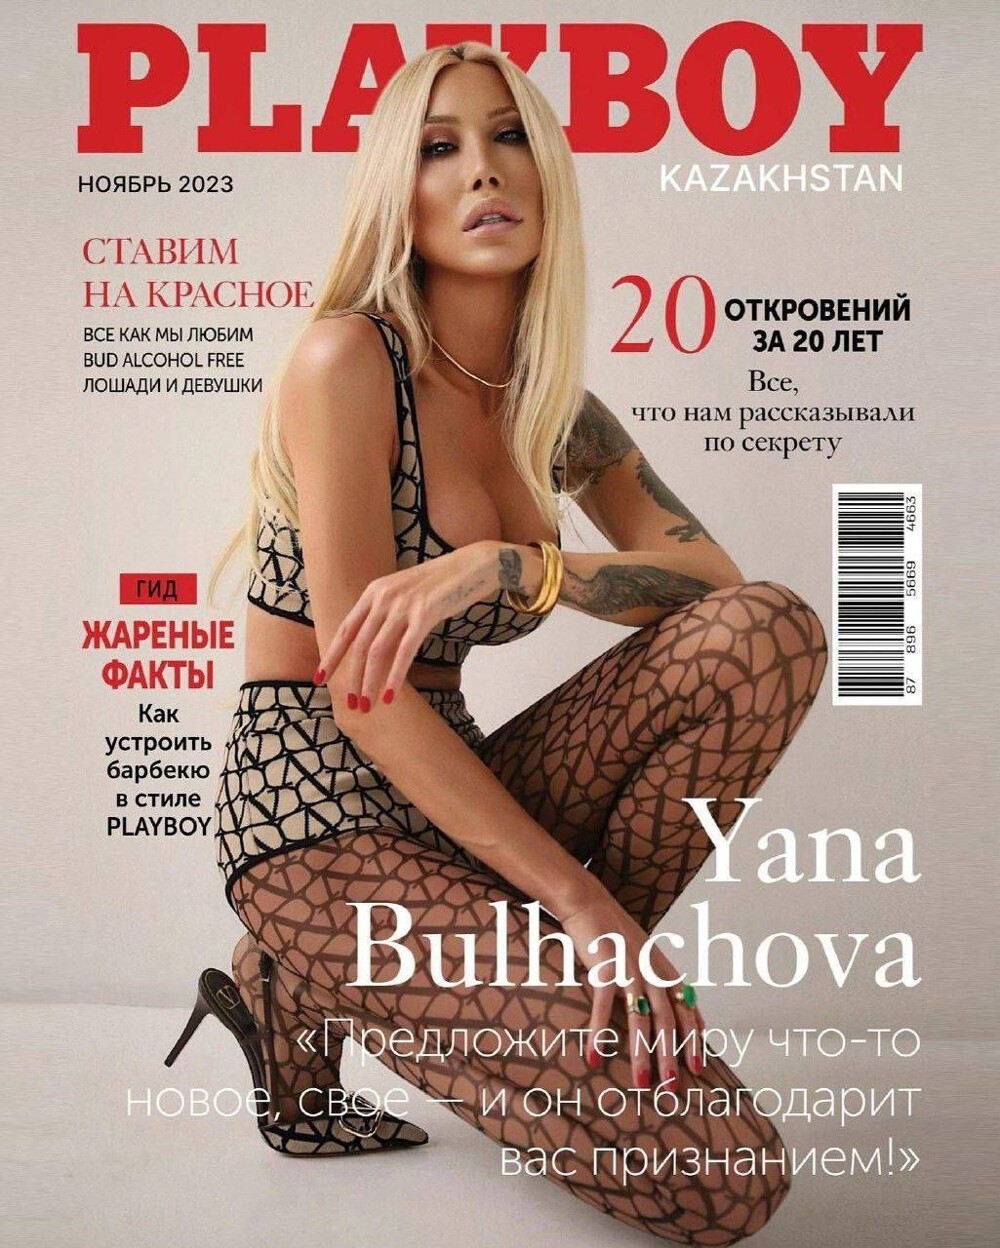 Головокружительная карьера: казахстанский журнал PLAYBOY поместил на обложку украинского трансгендера